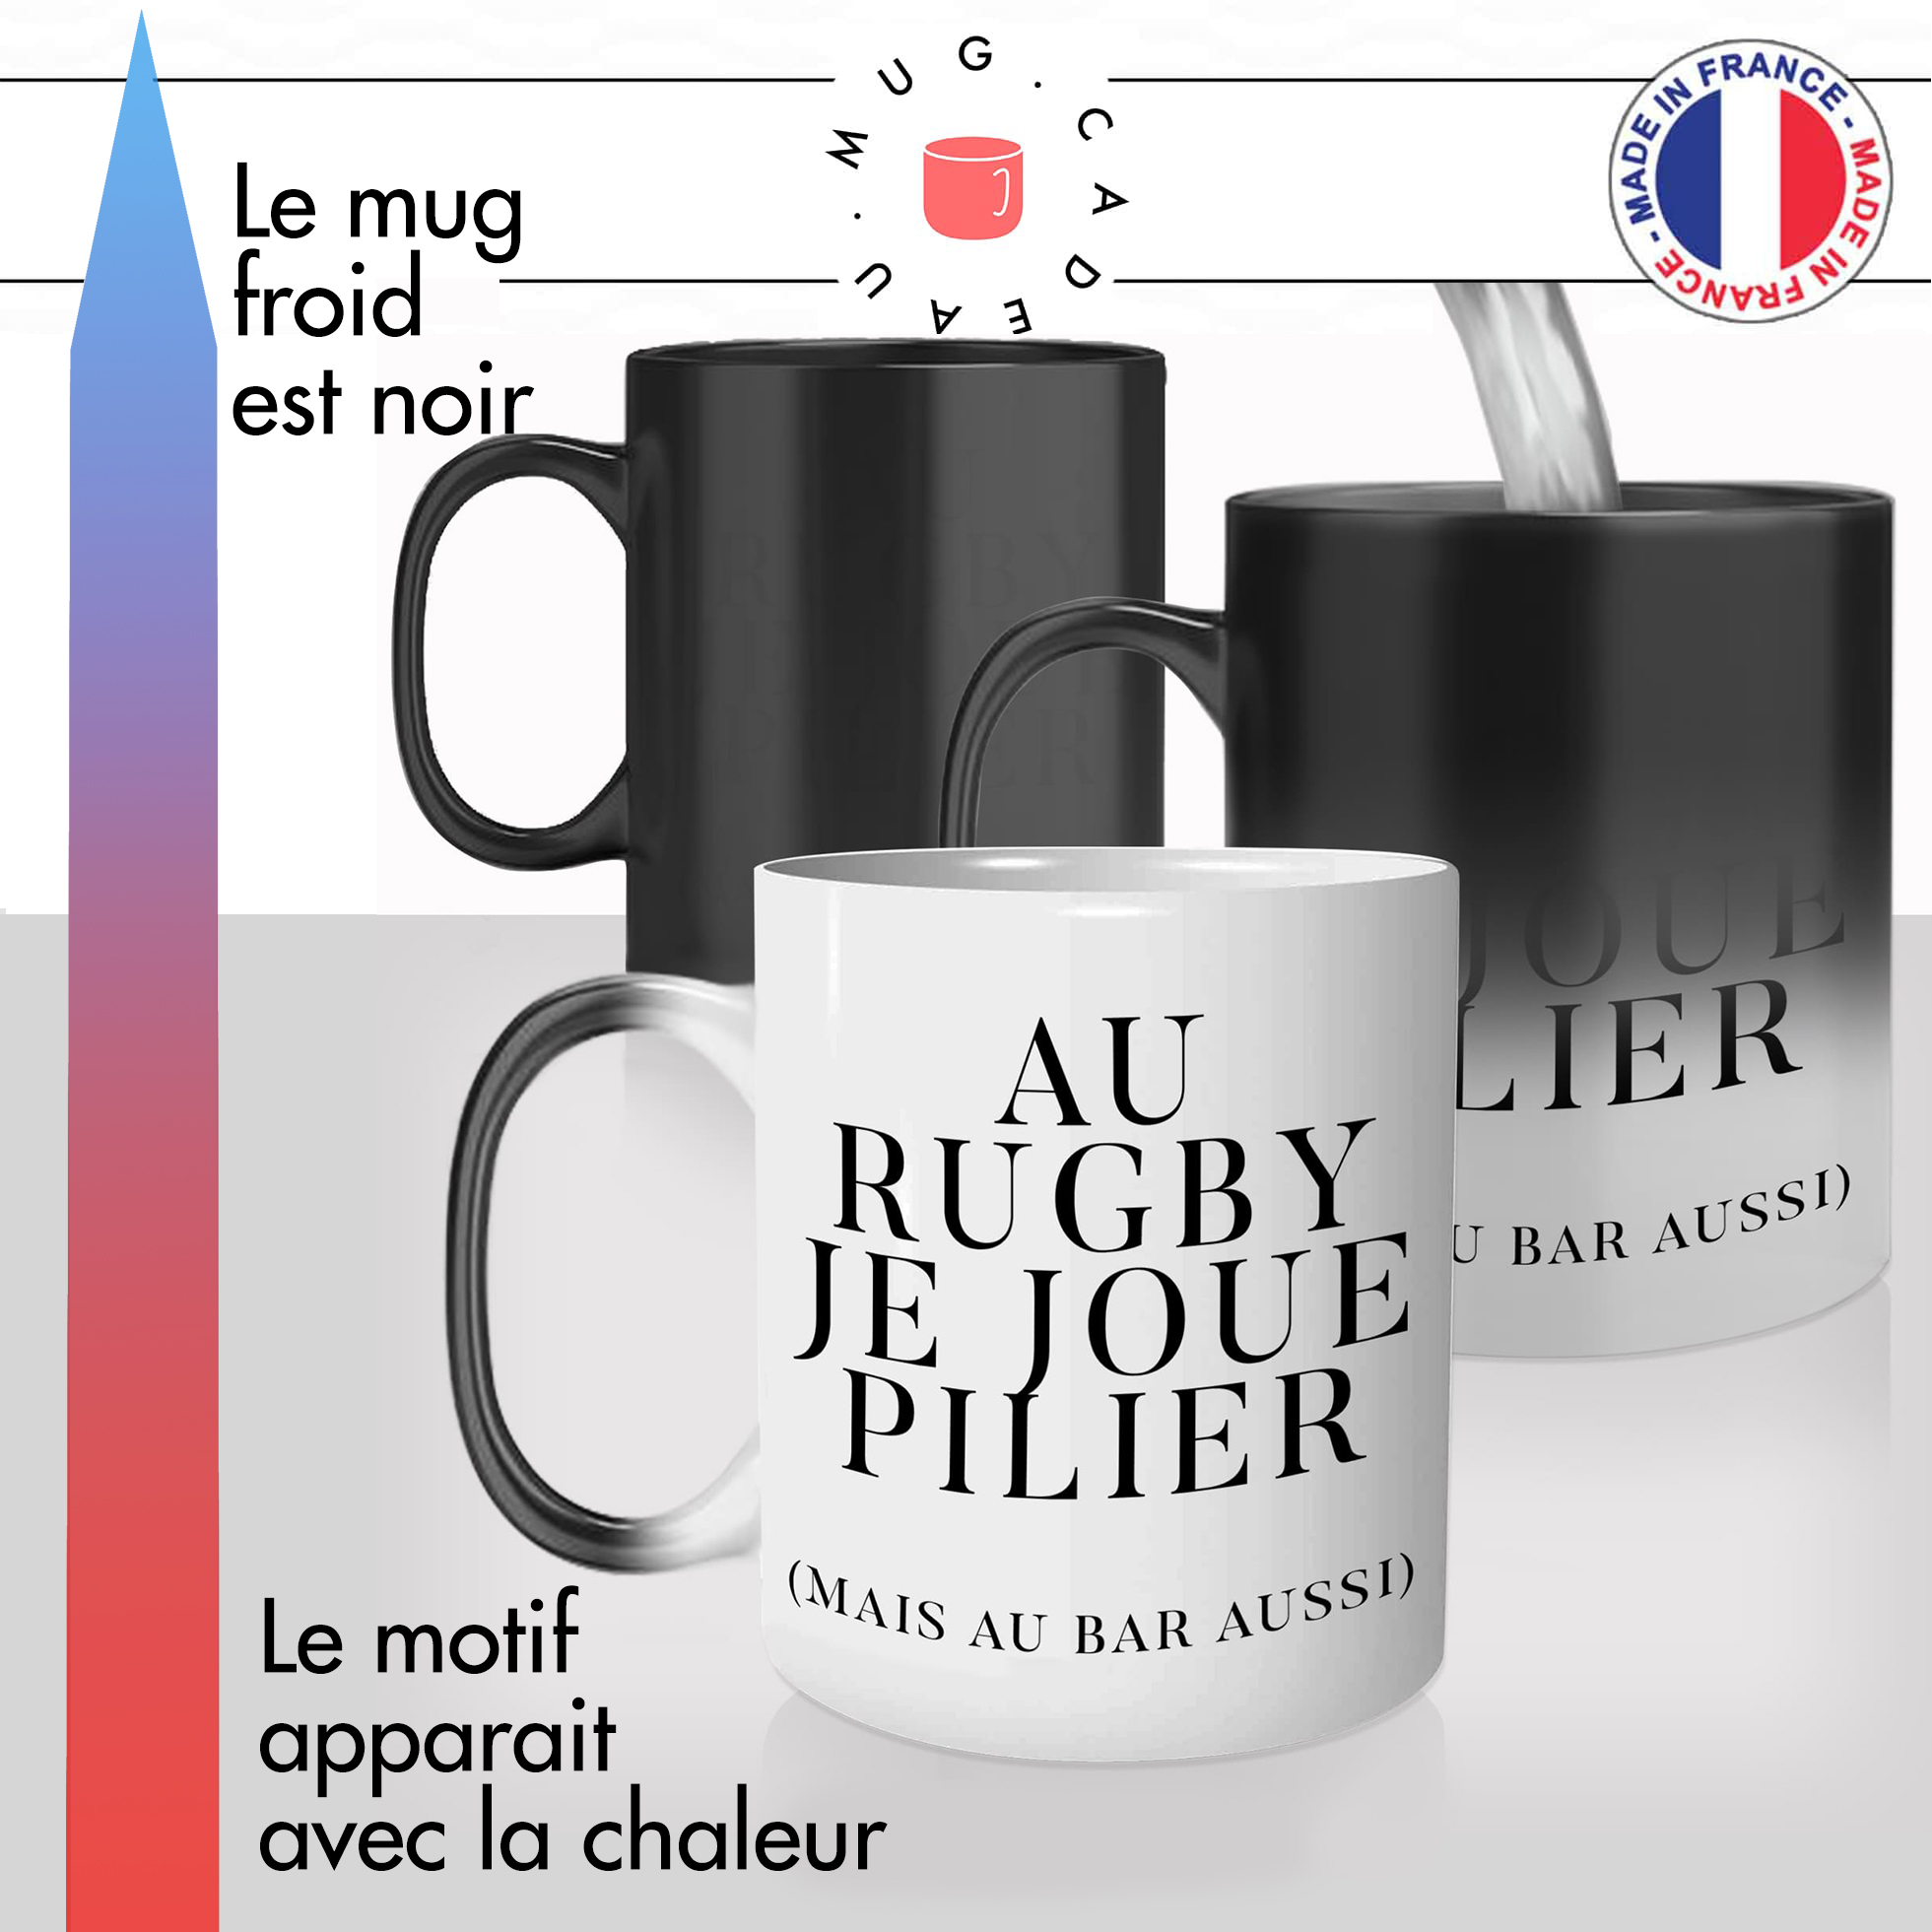 mug-cadeau-magique-tasse-rugby-rugbyman-pilier-coupe-du-monde-xv-de-france-francais-pro-d-2-grand-chelem-offrir-pillier-de-bar-apéro